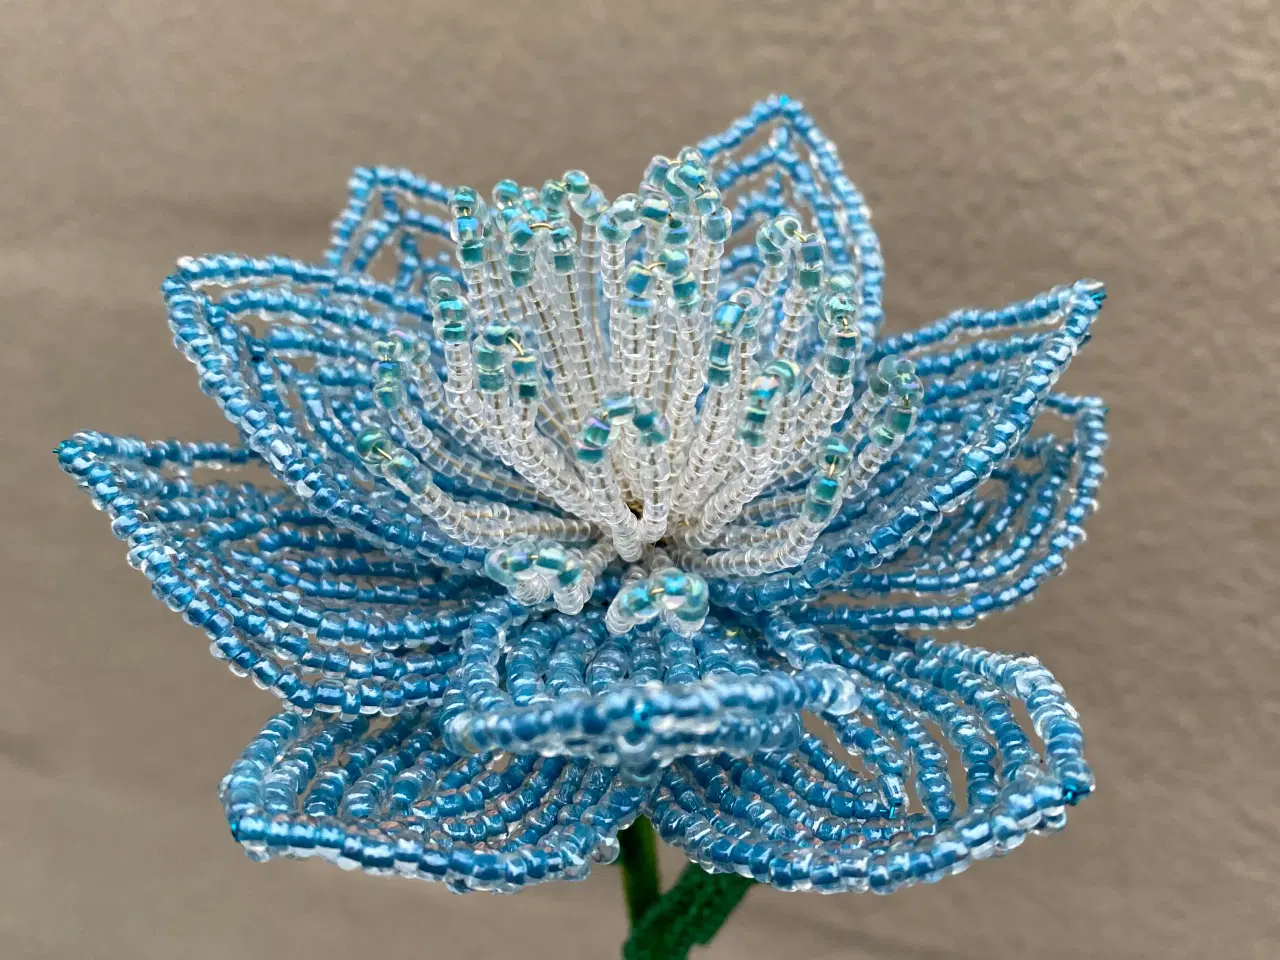 Billede 7 - Unikke evigheds blomster, lavet af perler